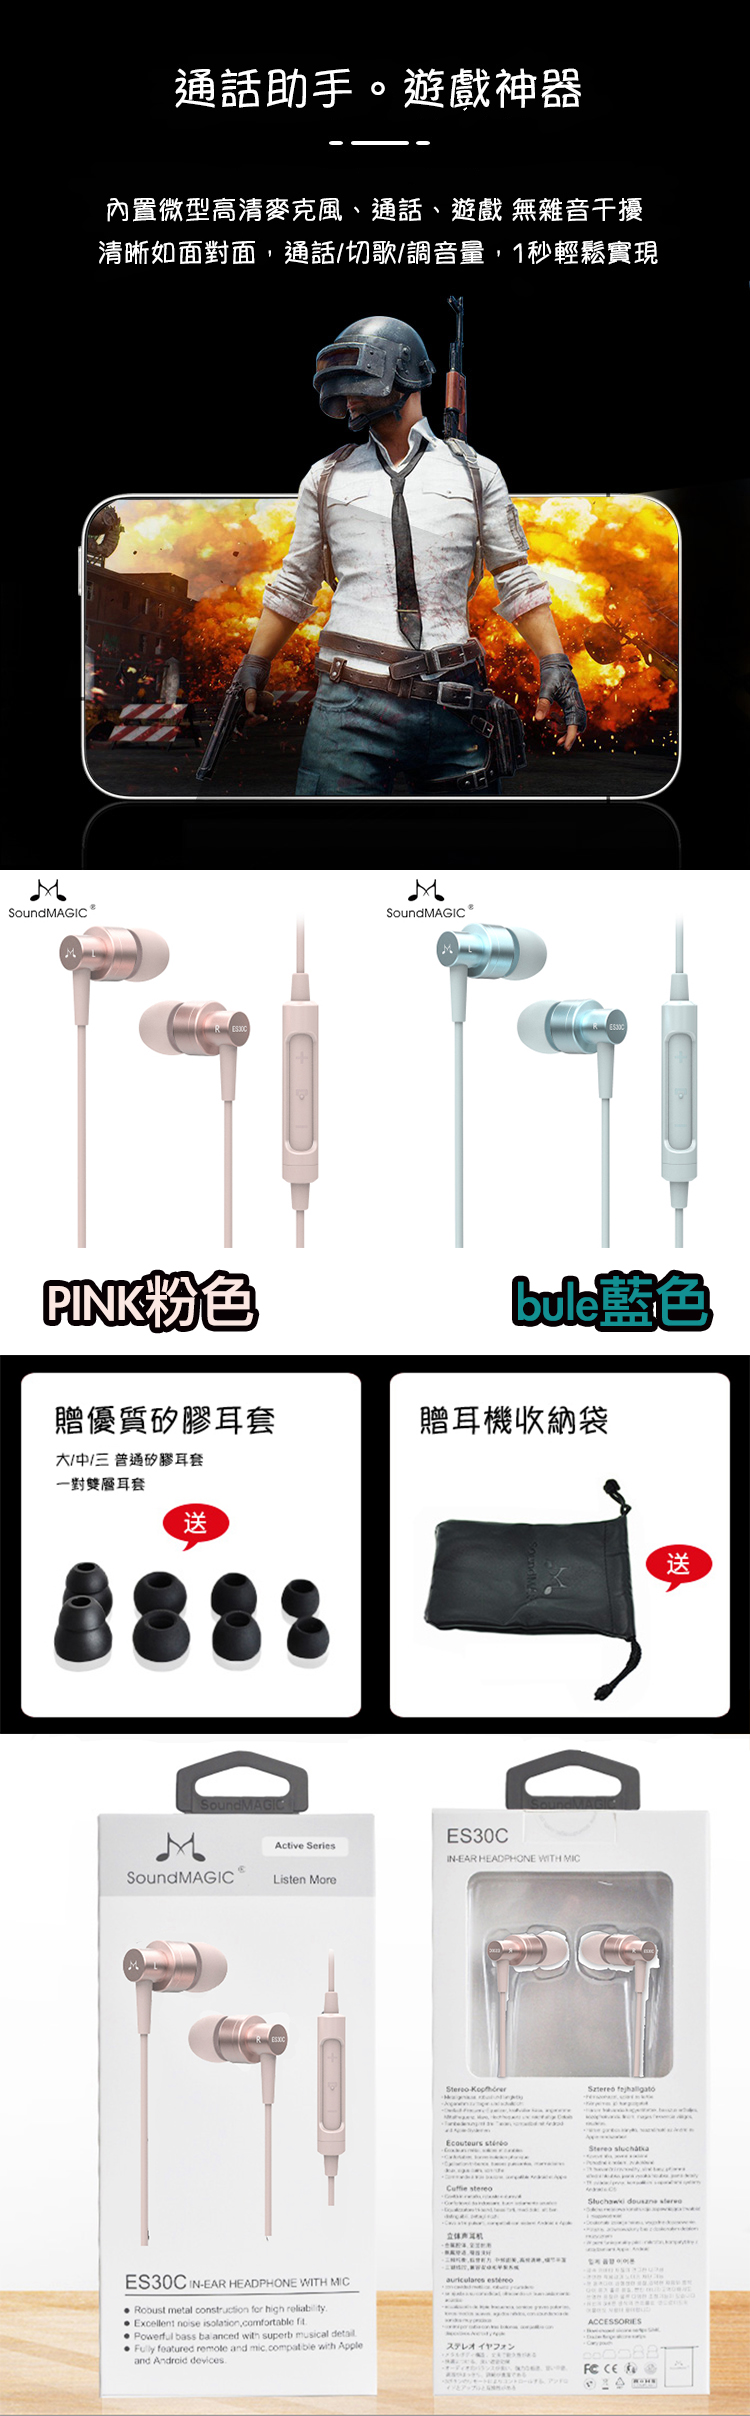  聲美e11,耳機推薦,聲美耳機,cp值耳機E10,soundmagic E11C 線控麥克風耳機 